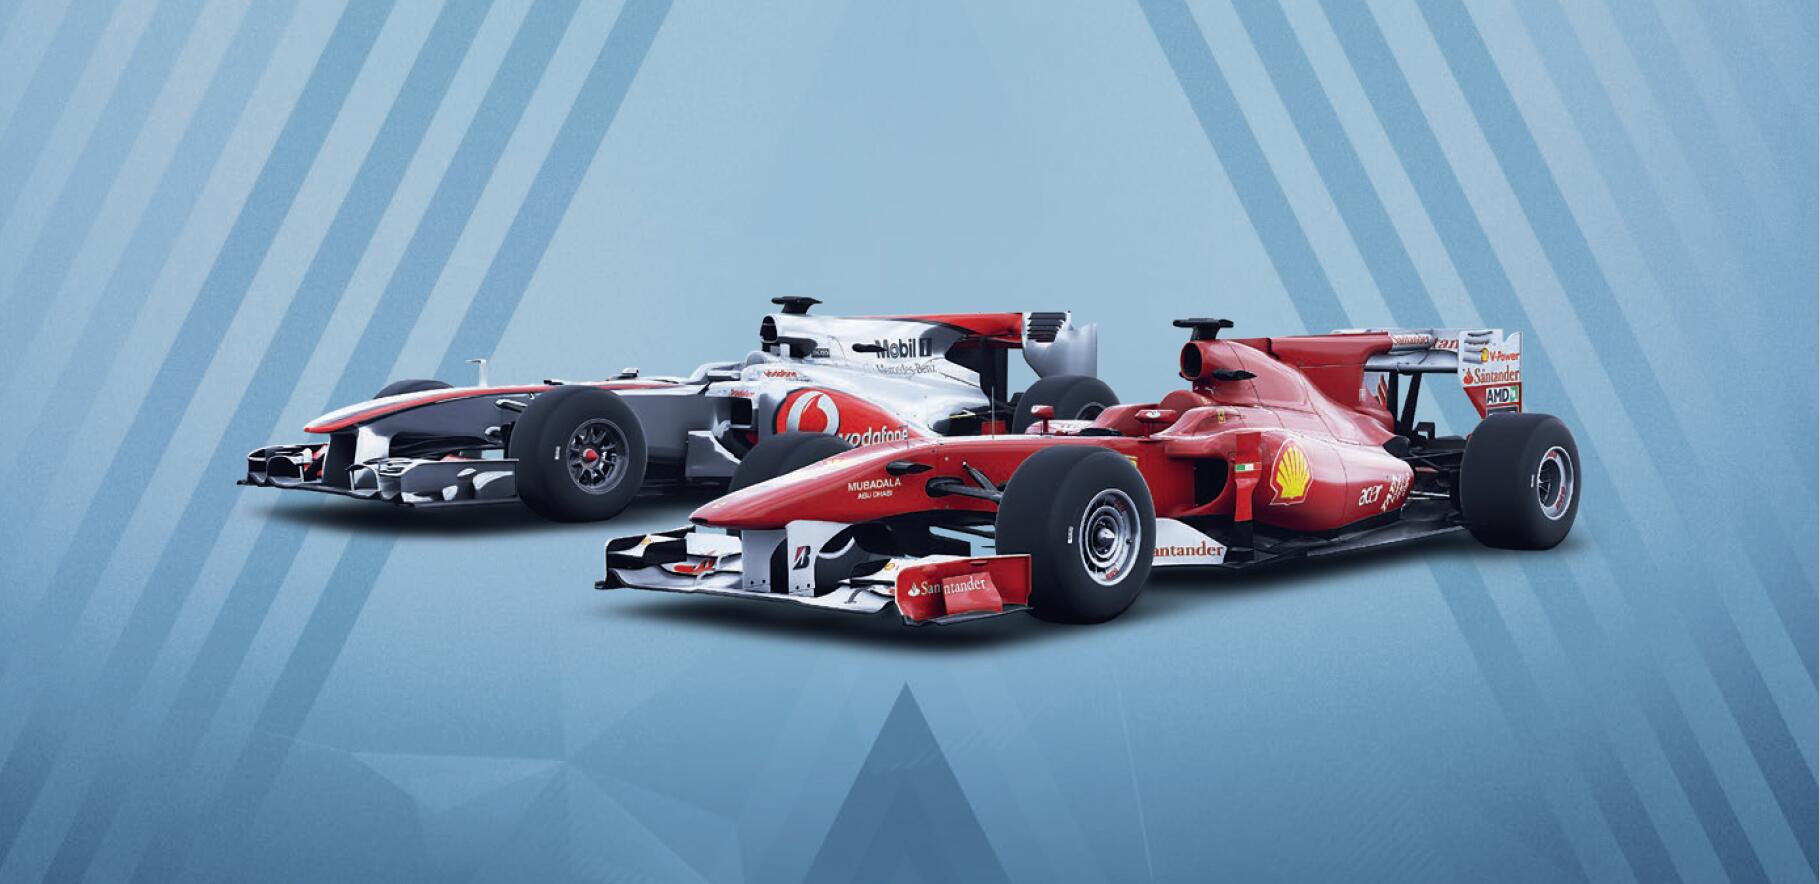 「一级方程式赛车《F1 2019》」今天发售